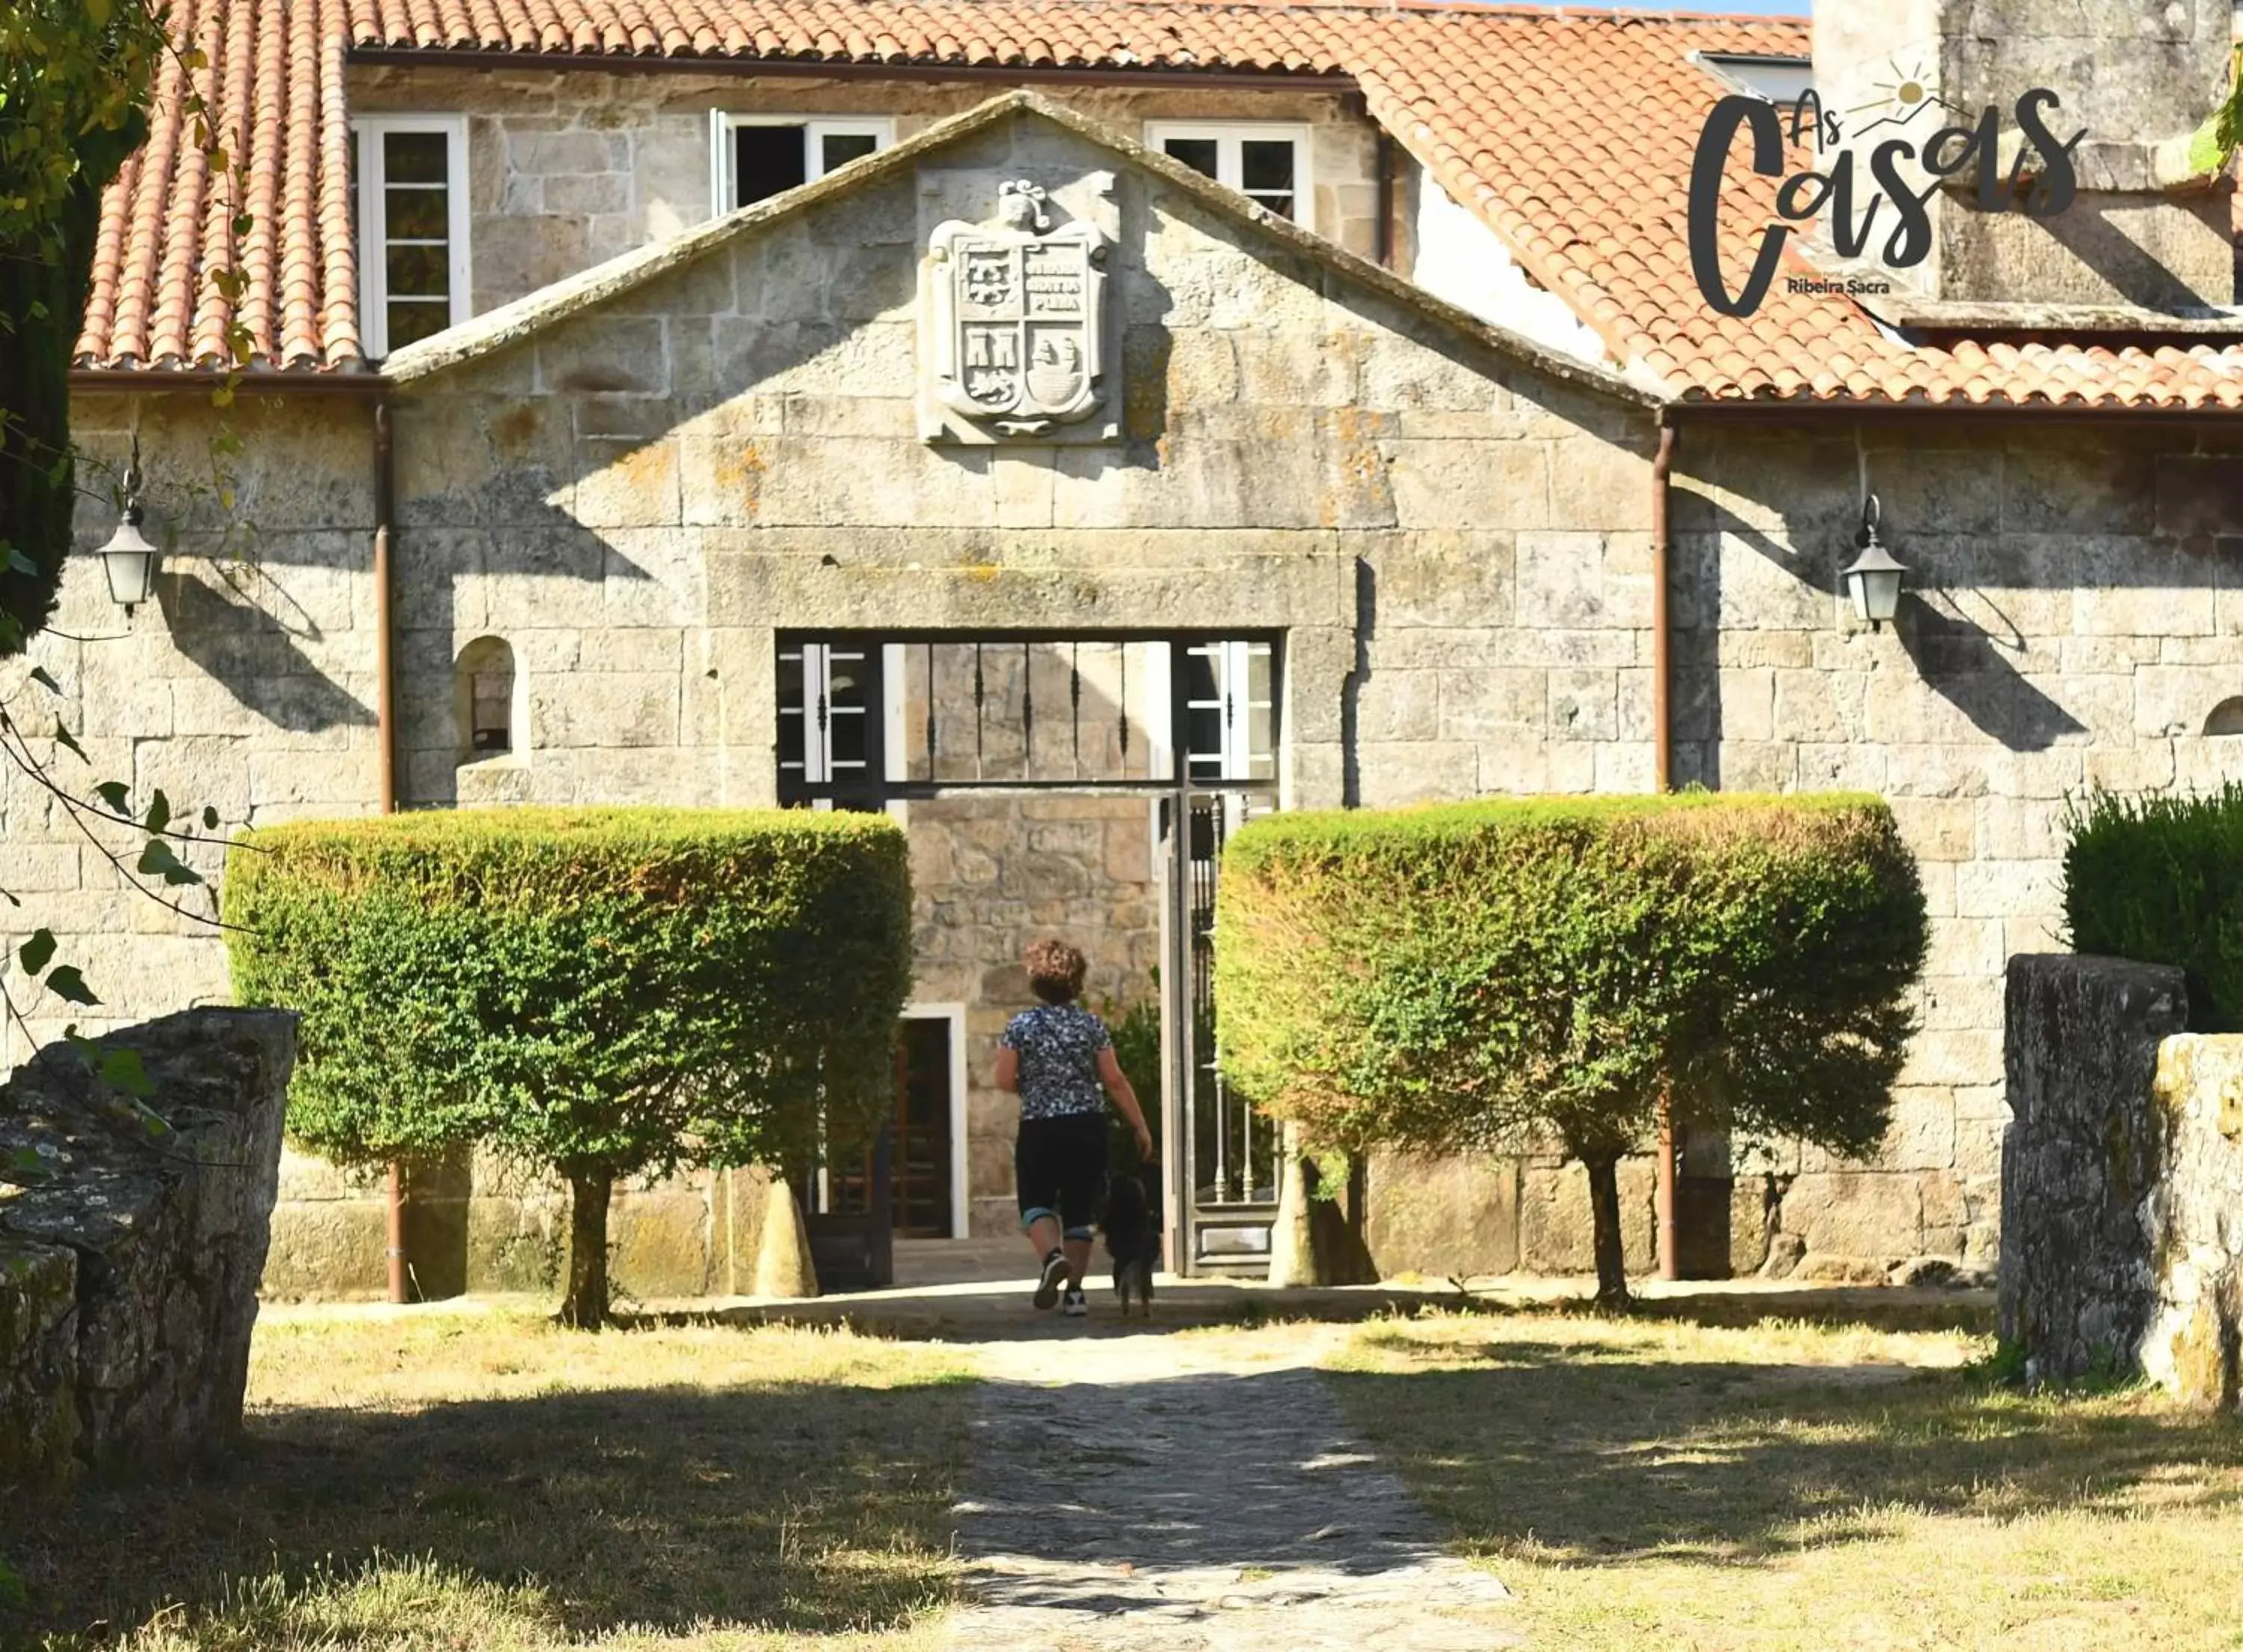 Property Building in As Casas Ribeira Sacra